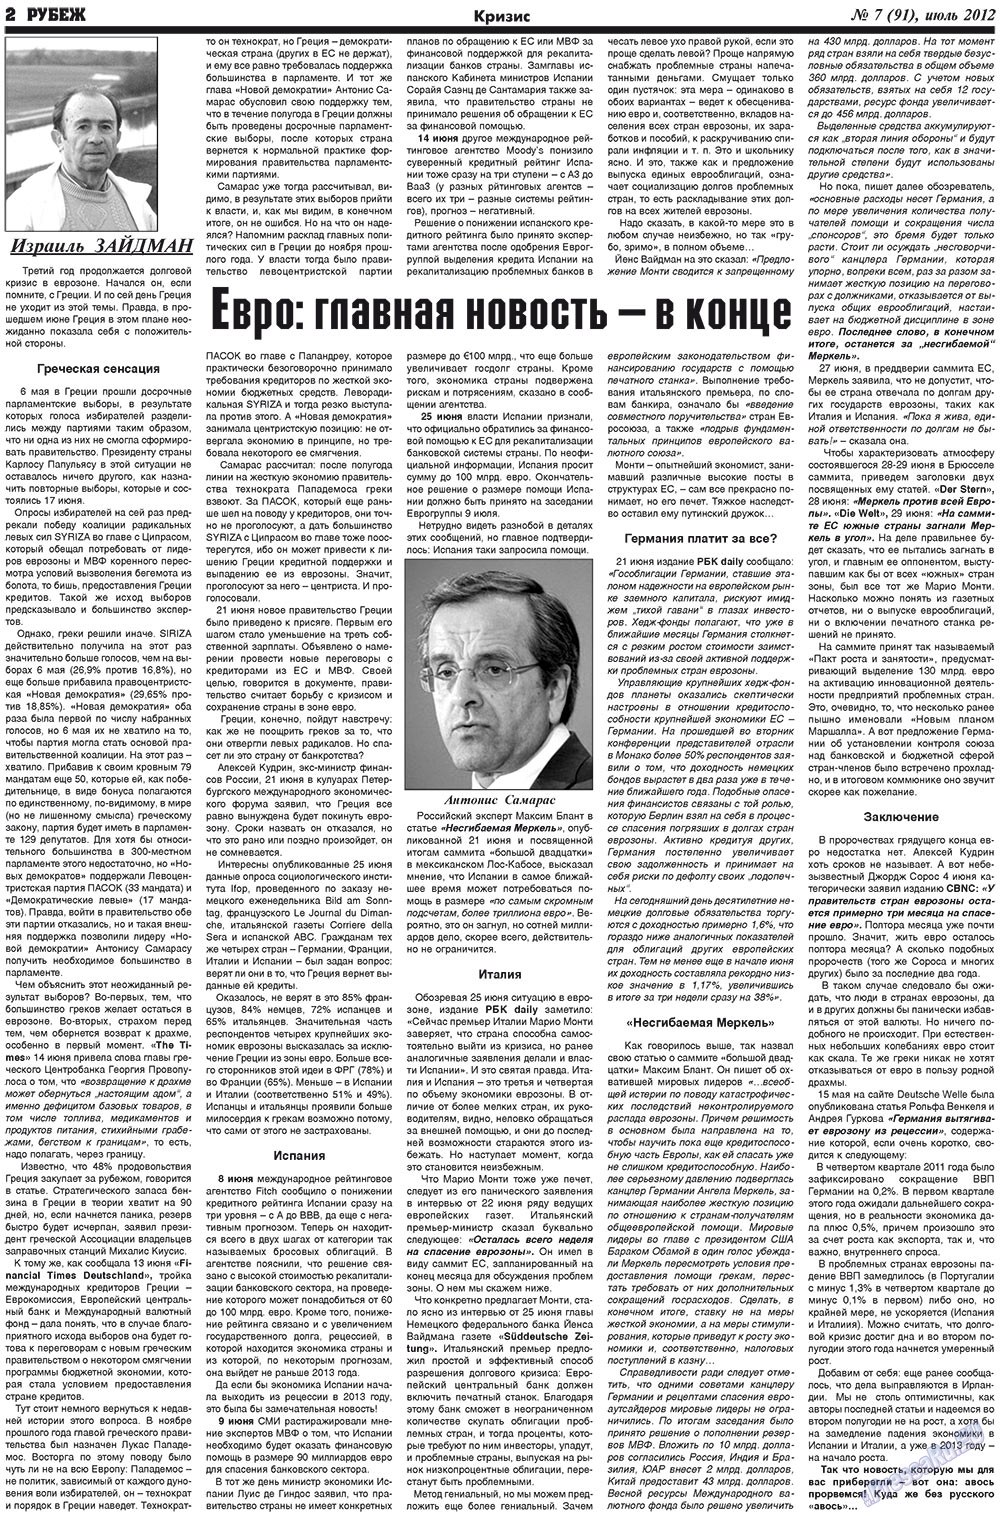 Рубеж (газета). 2012 год, номер 7, стр. 2